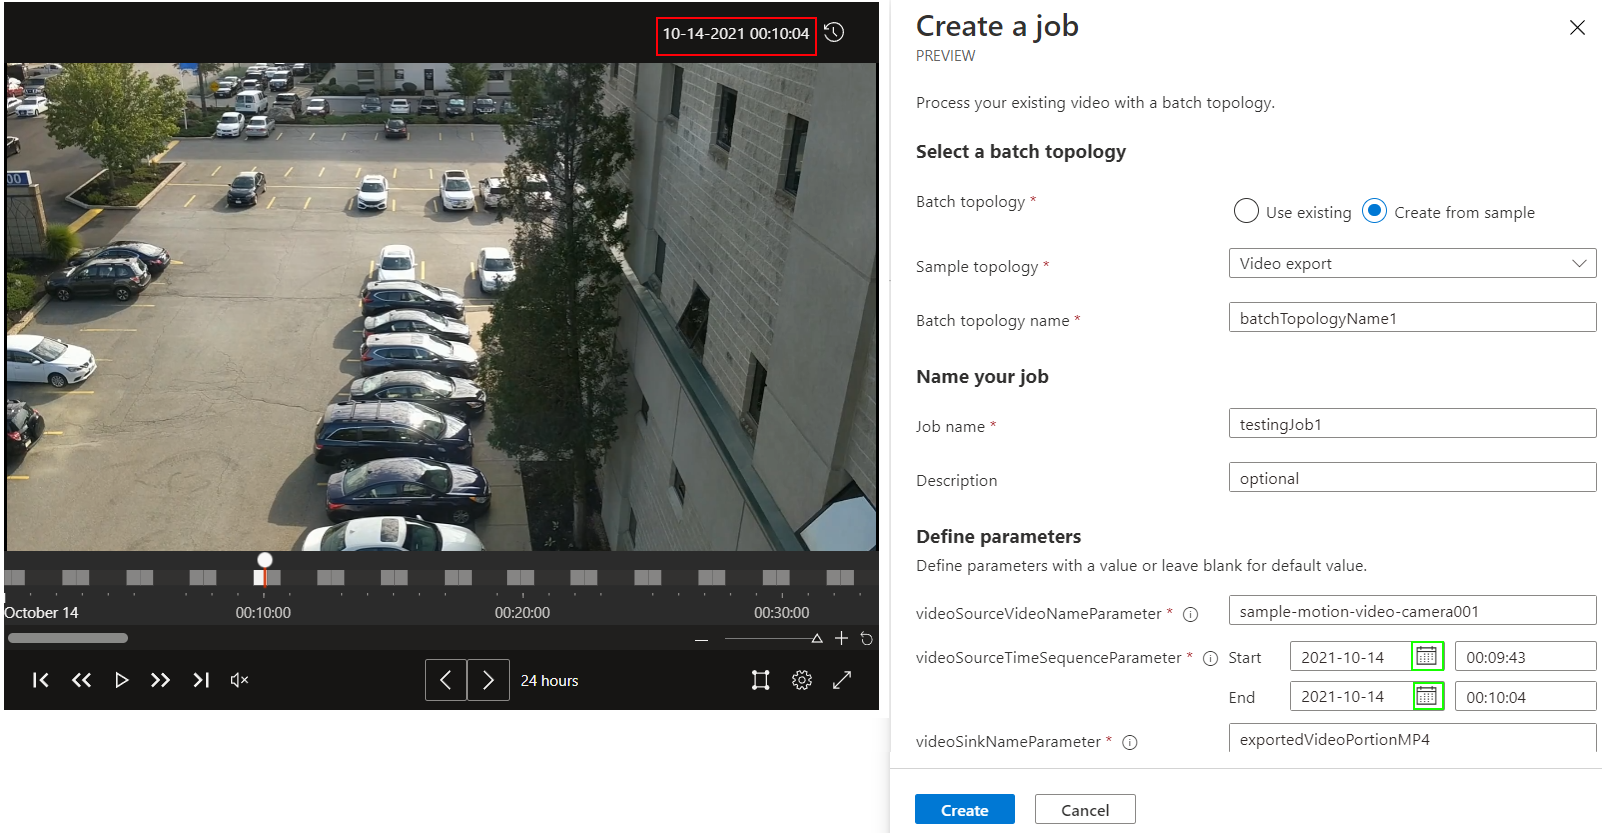 Obrázek widgetu videopřehrávacího nástroje Video Analyzer a vysouvacího okna úloh kanálu se zvýrazněným časovým razítkem videa v červeném poli a zeleným rámečkem kolem ikony kalendáře